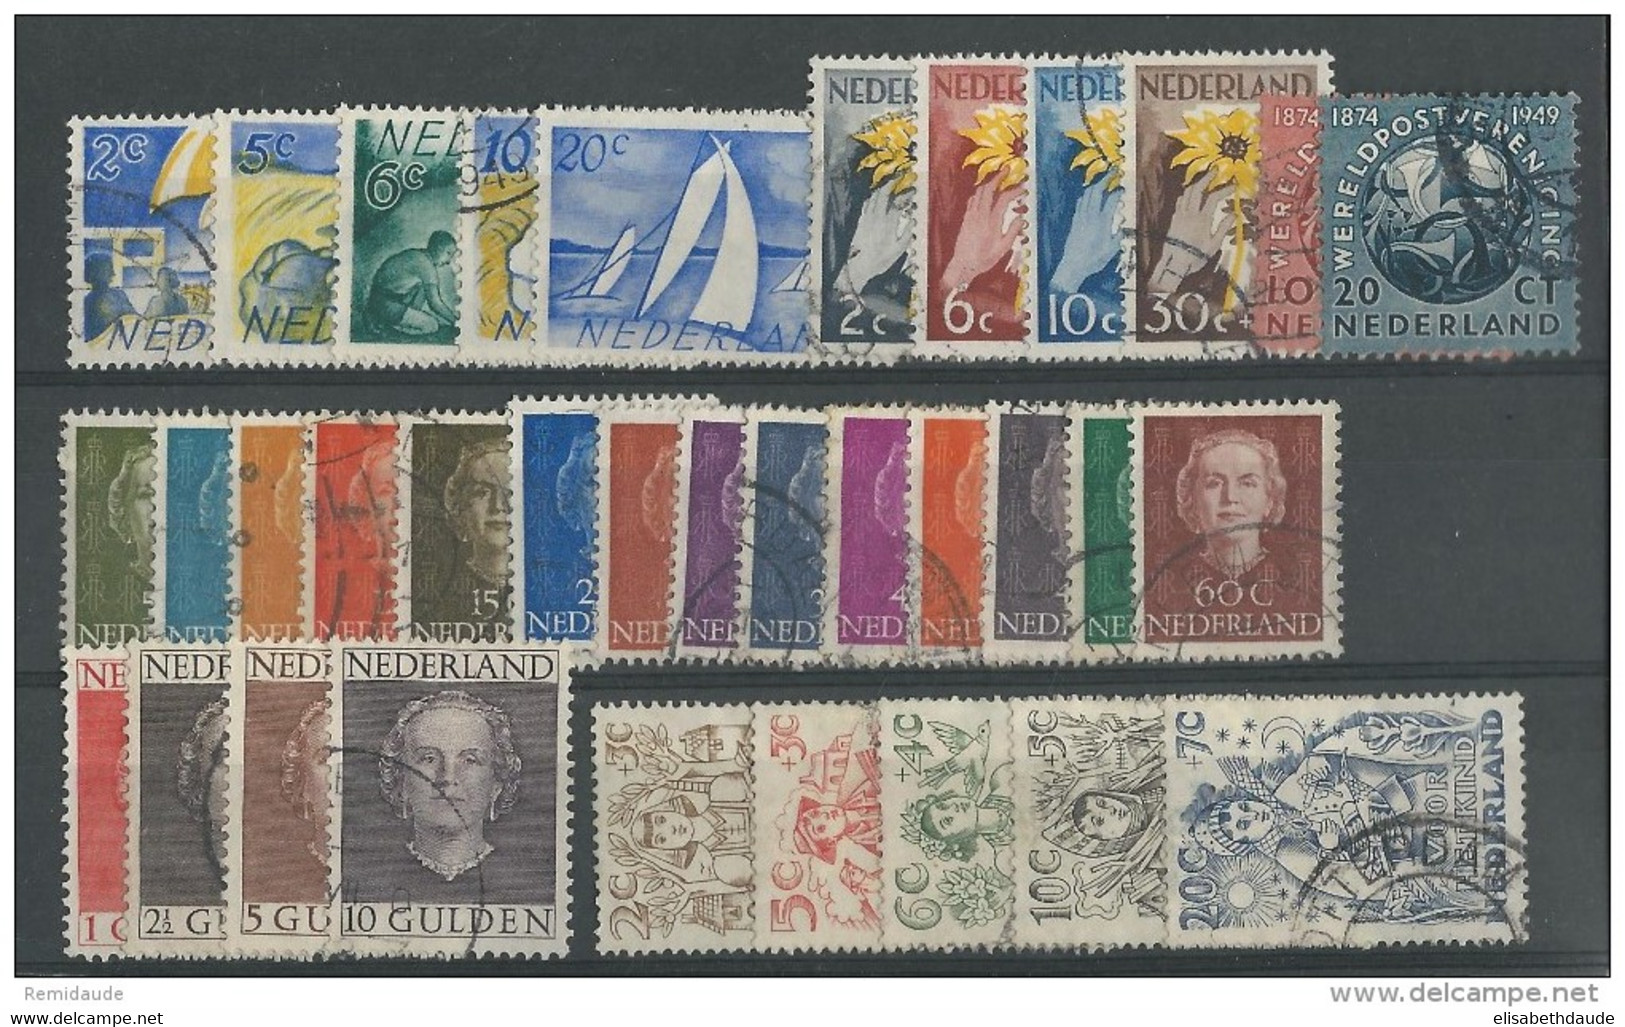 NEDERLAND - 1949 ANNEE COMPLETE - YVERT N° 504/534 OBLITERES - COTE = 61 EUROS - Volledig Jaar